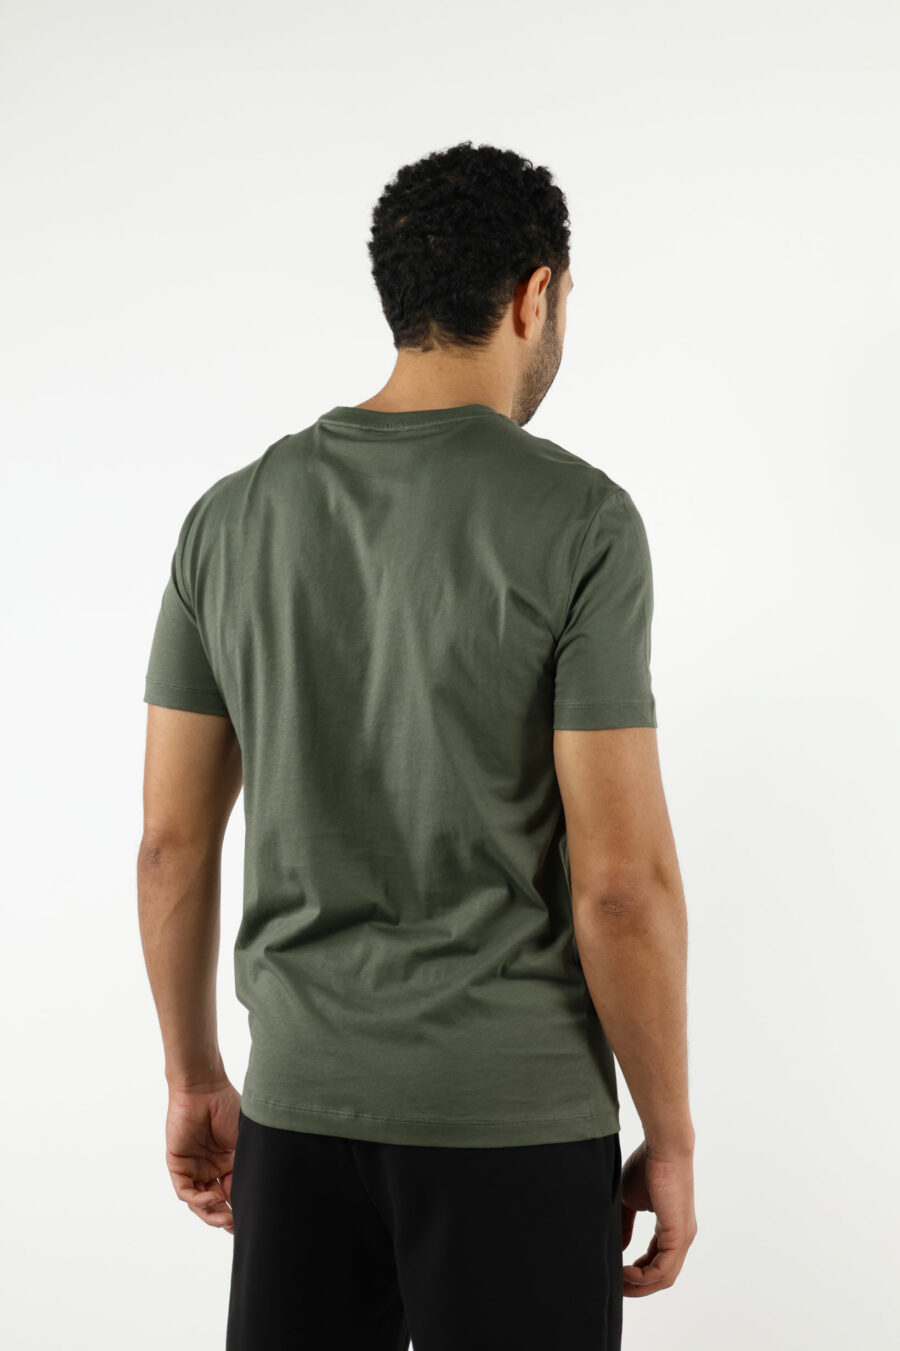 Grünes T-Shirt mit schwarzem Minilogo "lux identity" auf Goldplatte - 110879